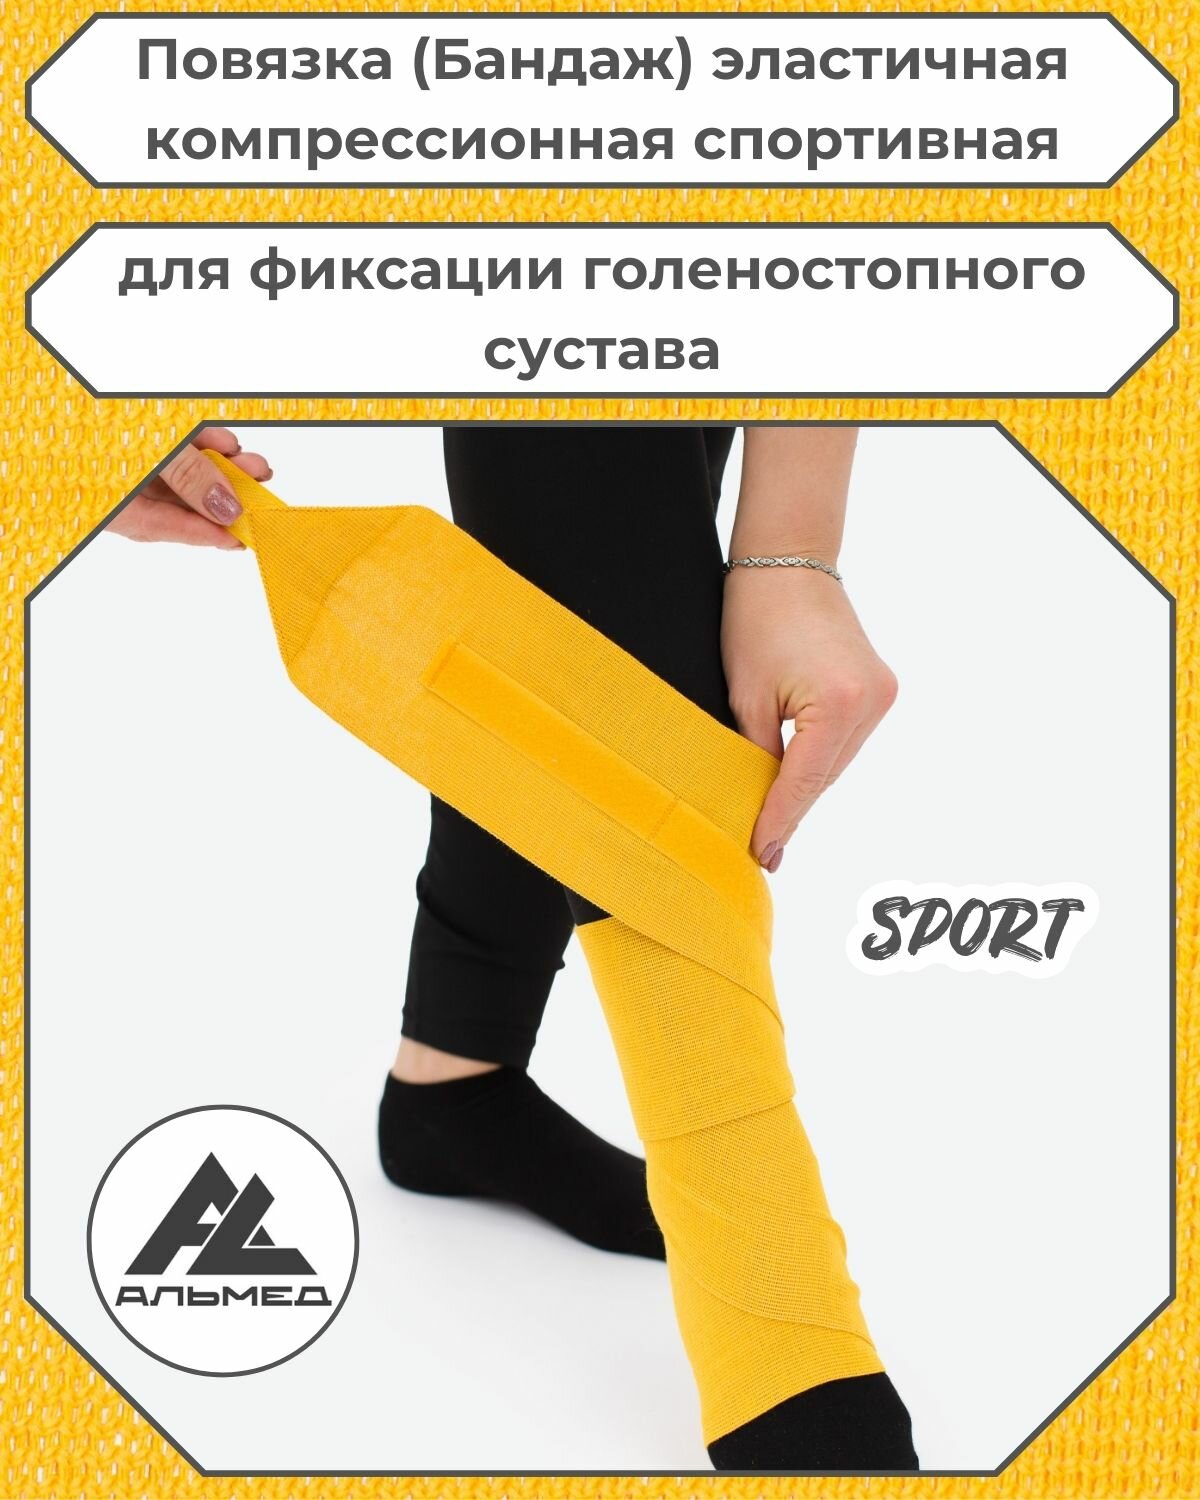 Повязка(бандаж, фиксатор)спортивная эластичная компрессионная на голеностопный сустав, универсальная, застёжка «Velcro» 1,0 м *100мм, жёлтый, с липучкой, Альмед